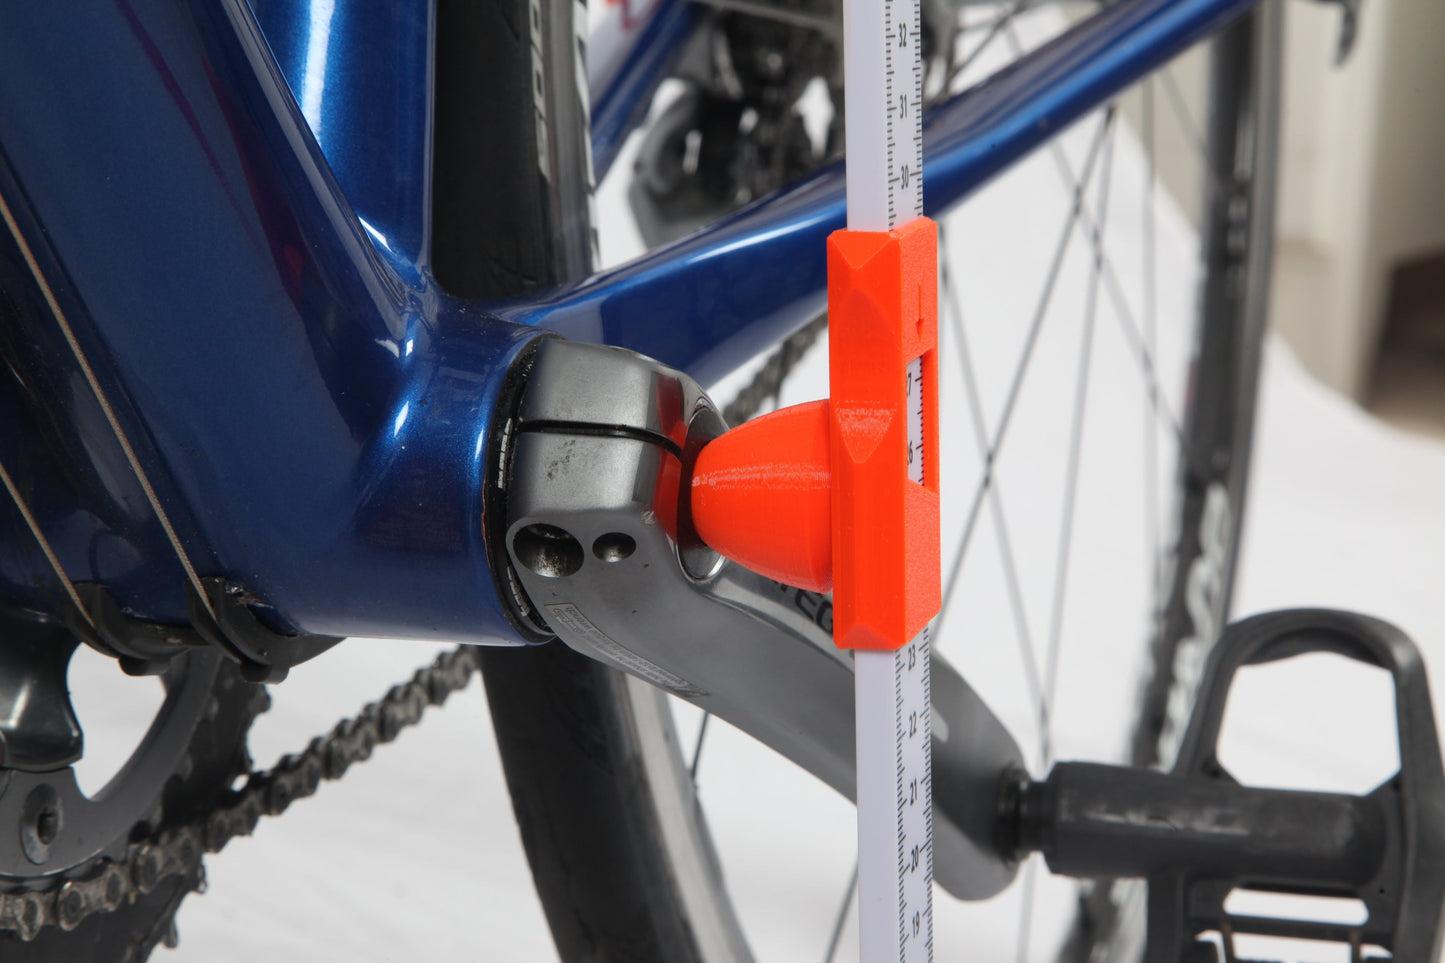 Bike Measurement and setup tool V6